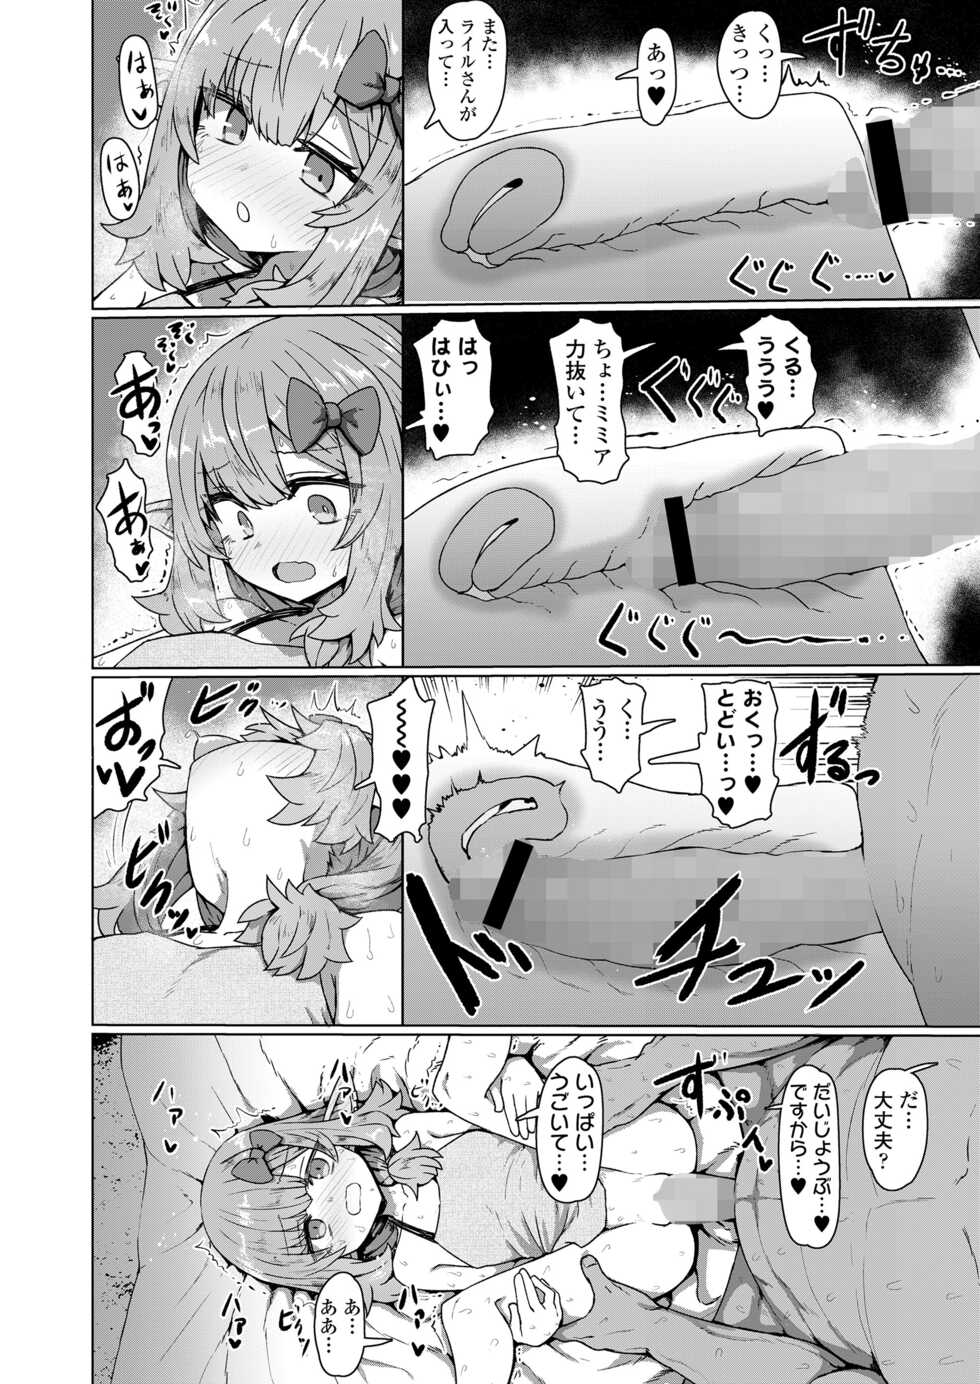 Towako 13 [Digital] - Page 28